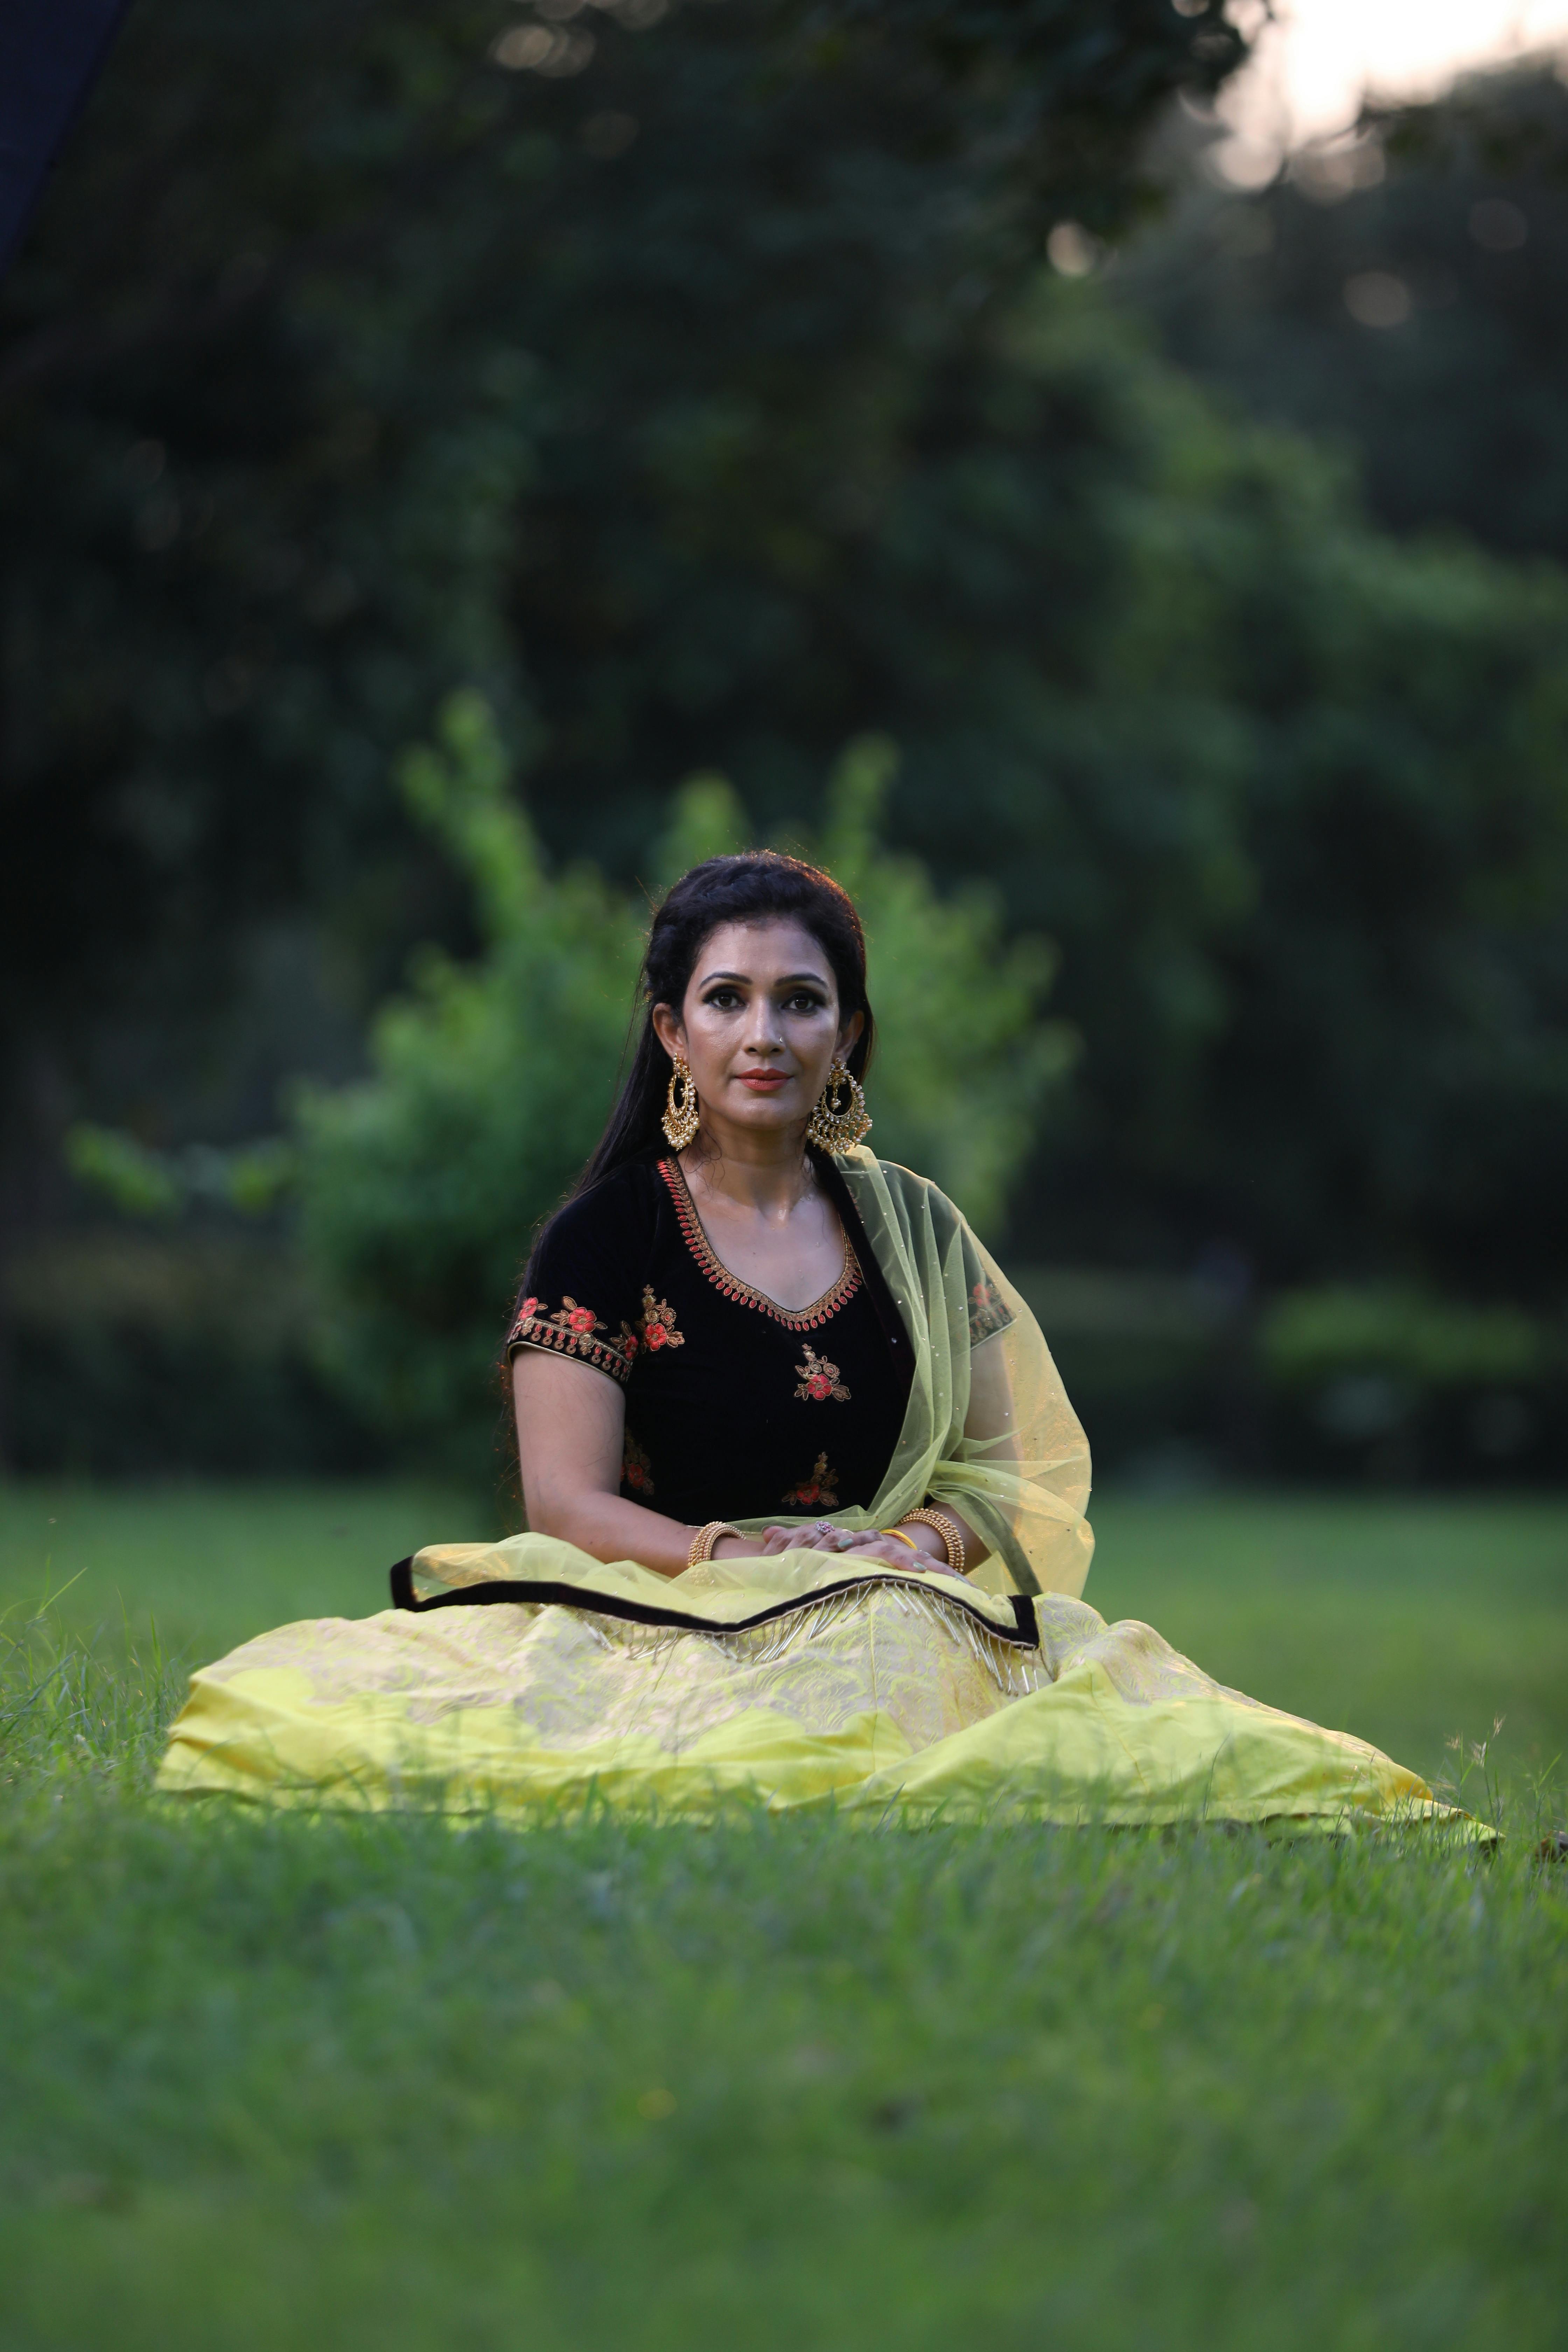 Saree tales by Sara Annaiah | Times of India